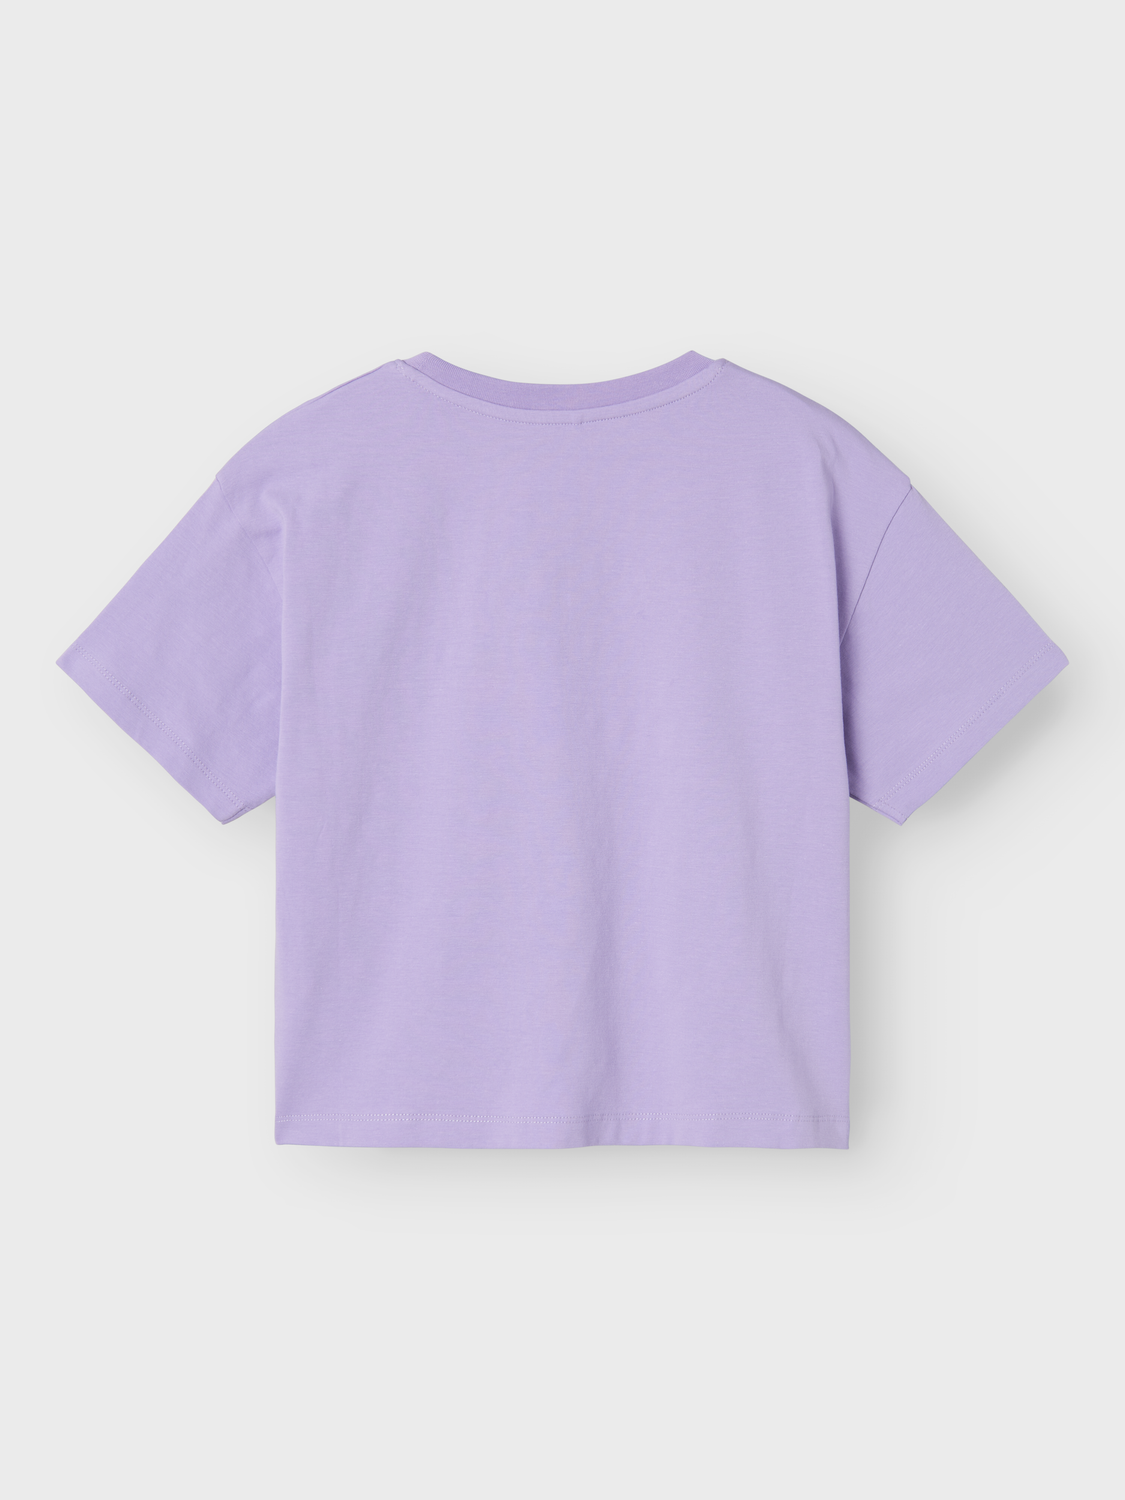 NKFATTA T-Shirts & Tops - Purple Rose